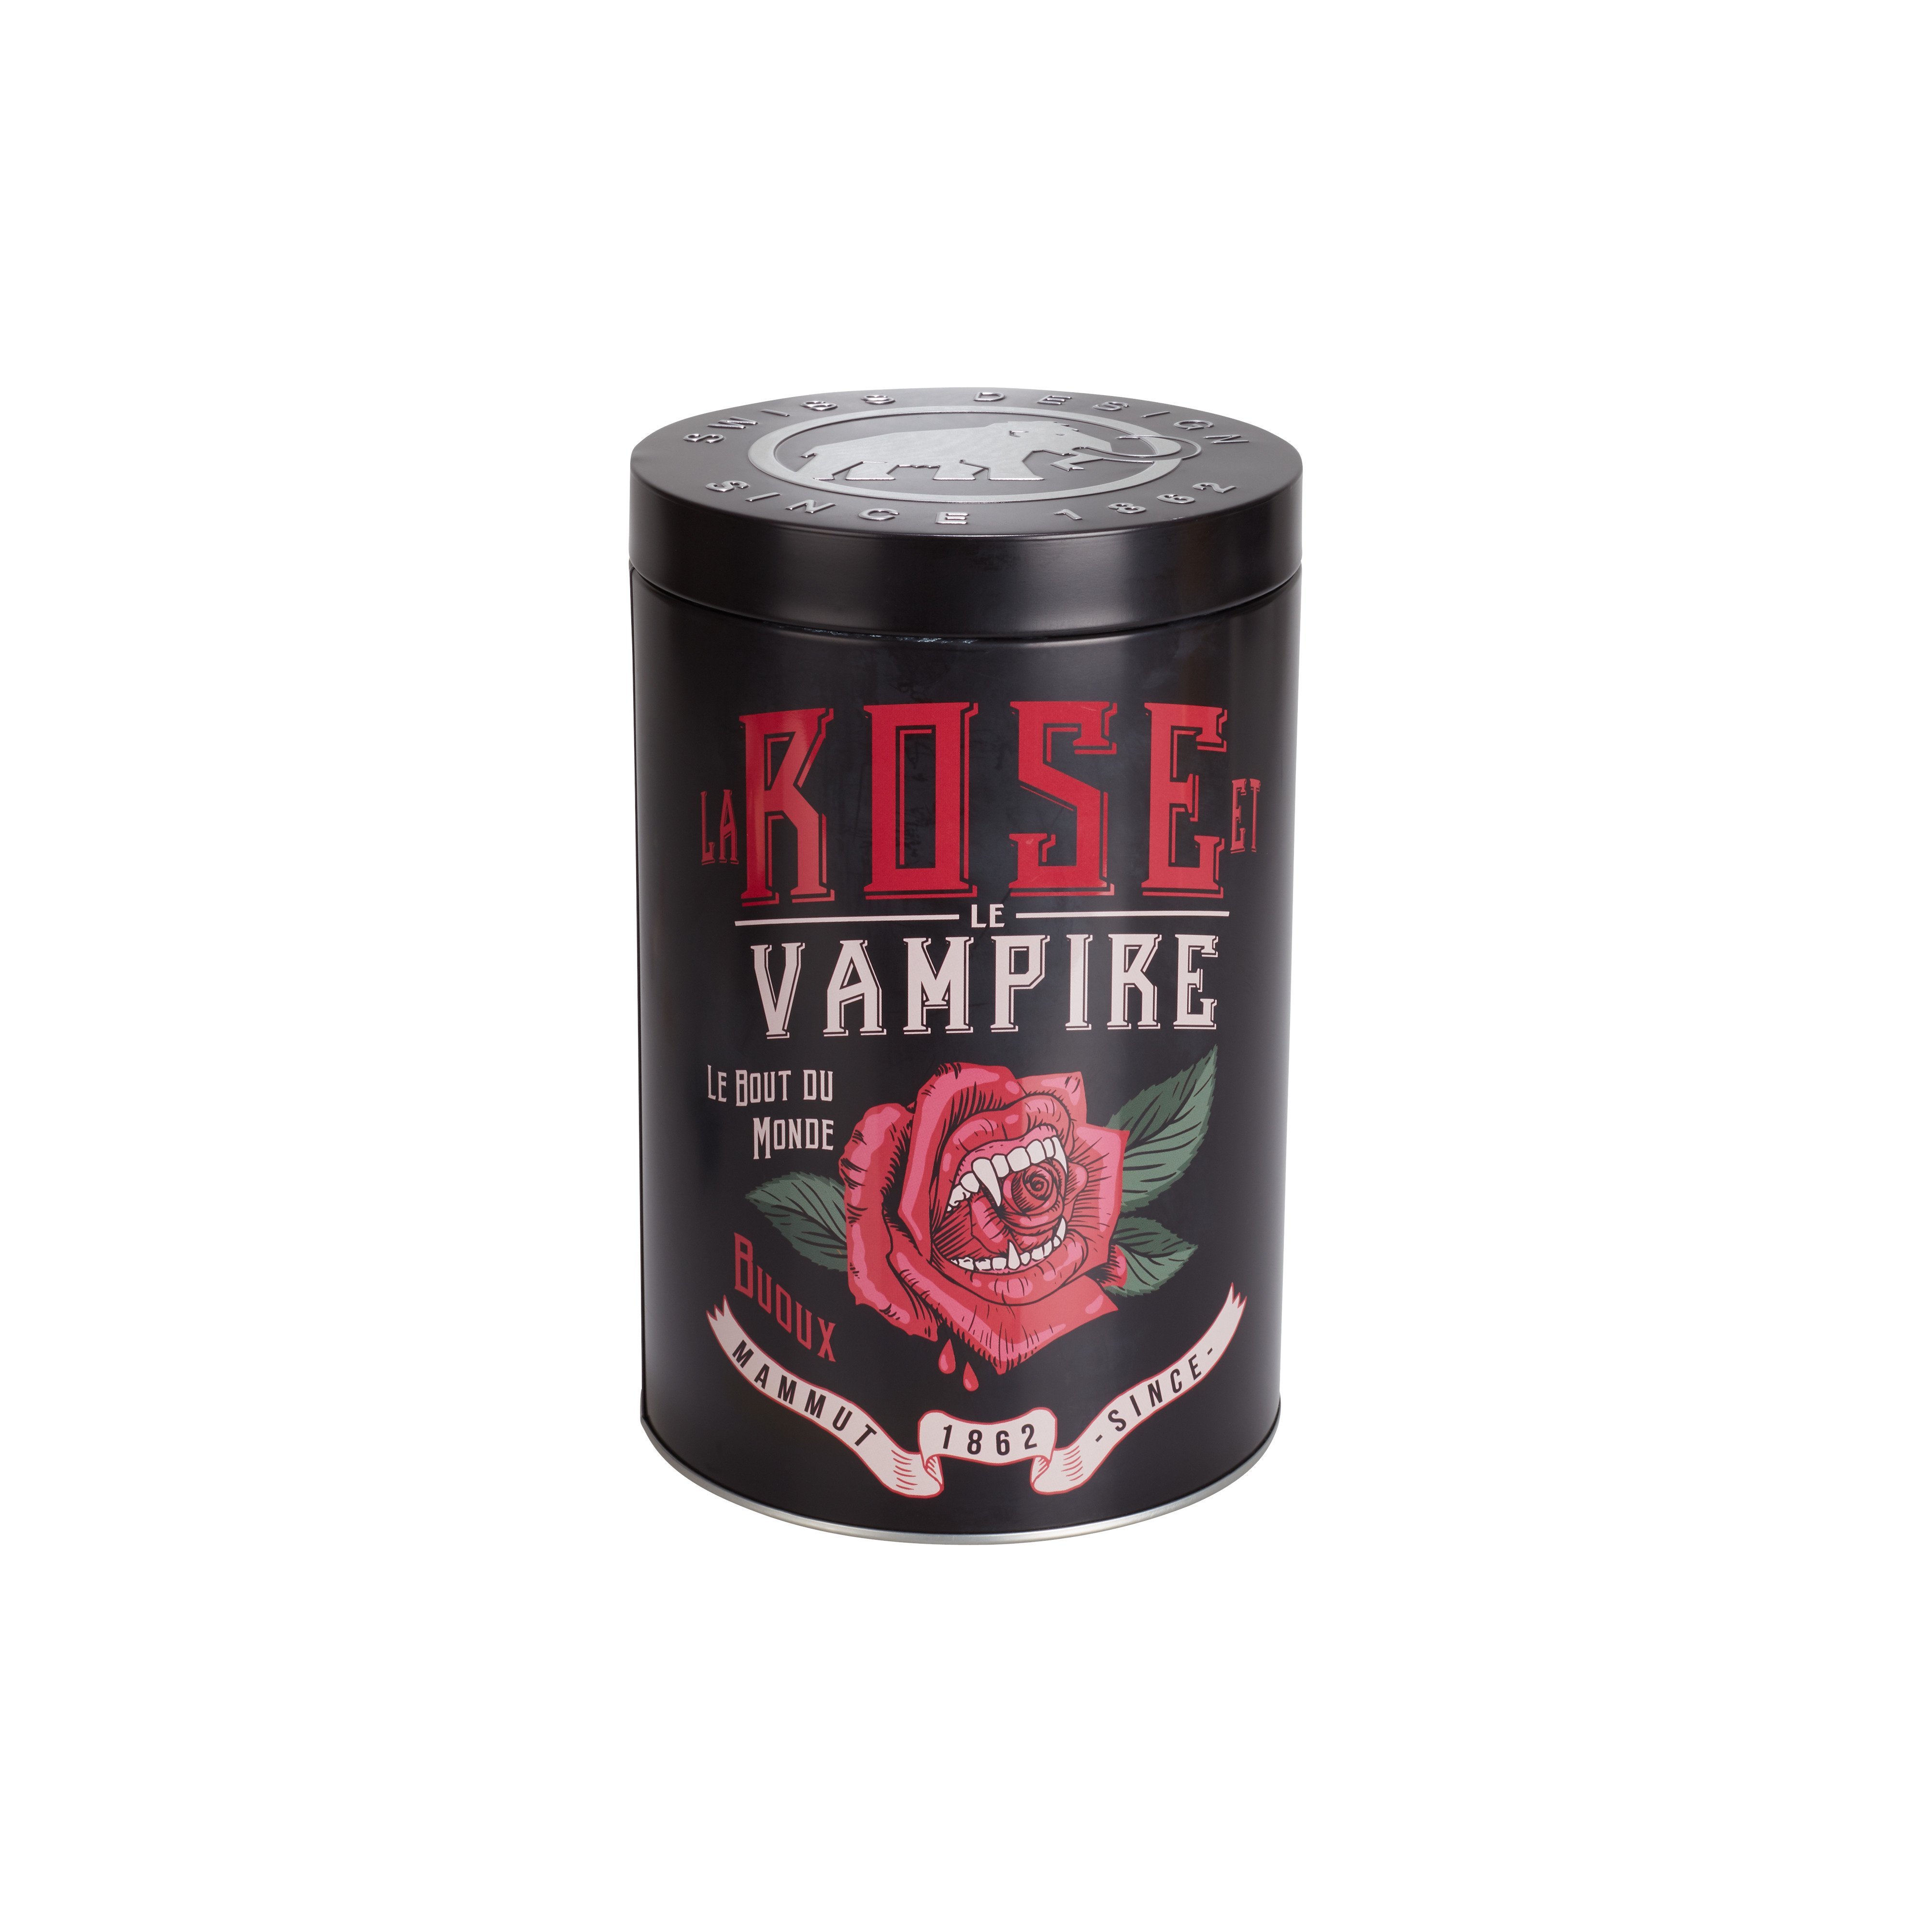 Pure Chalk Collectors Box - la rose et le vampire, one size product image